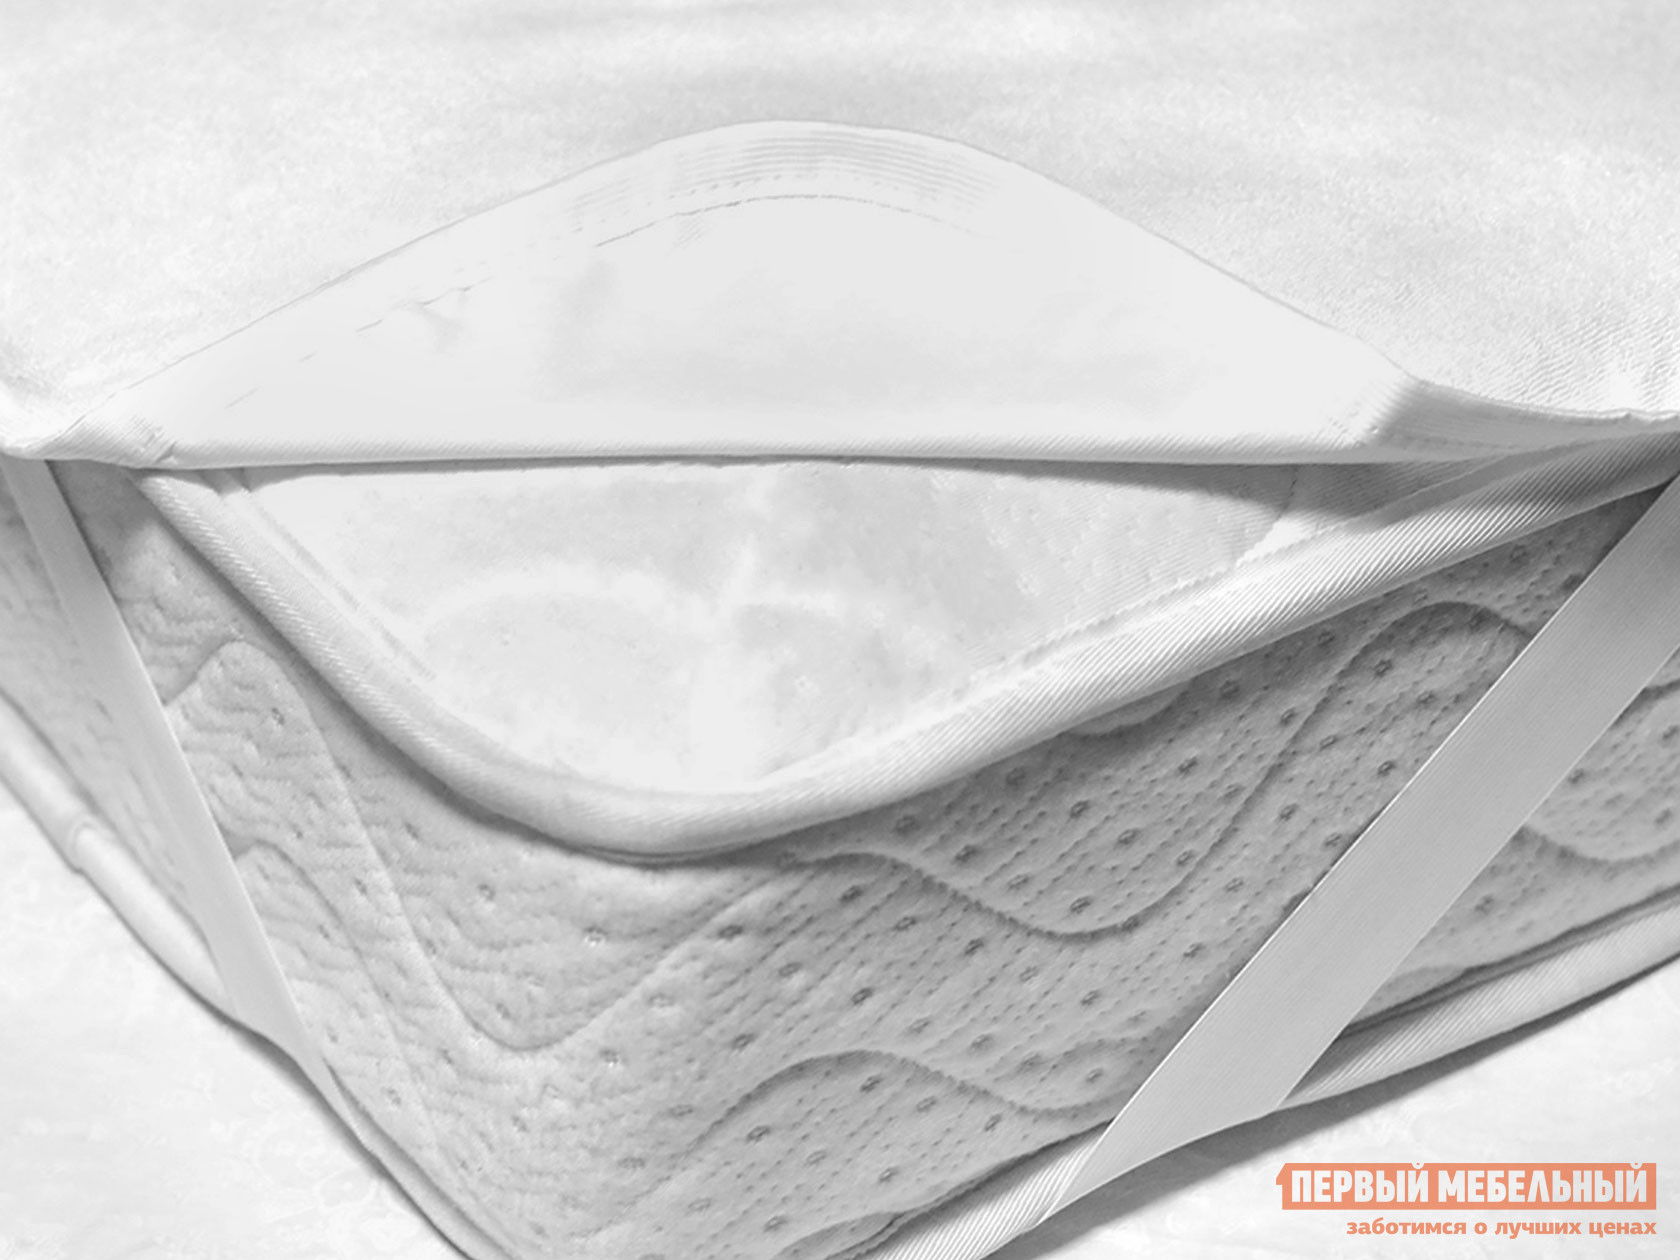 Чехол для матраса  Фулл протекшн на резинке Белый махровый, 2000 Х 2000 мм от Первый Мебельный